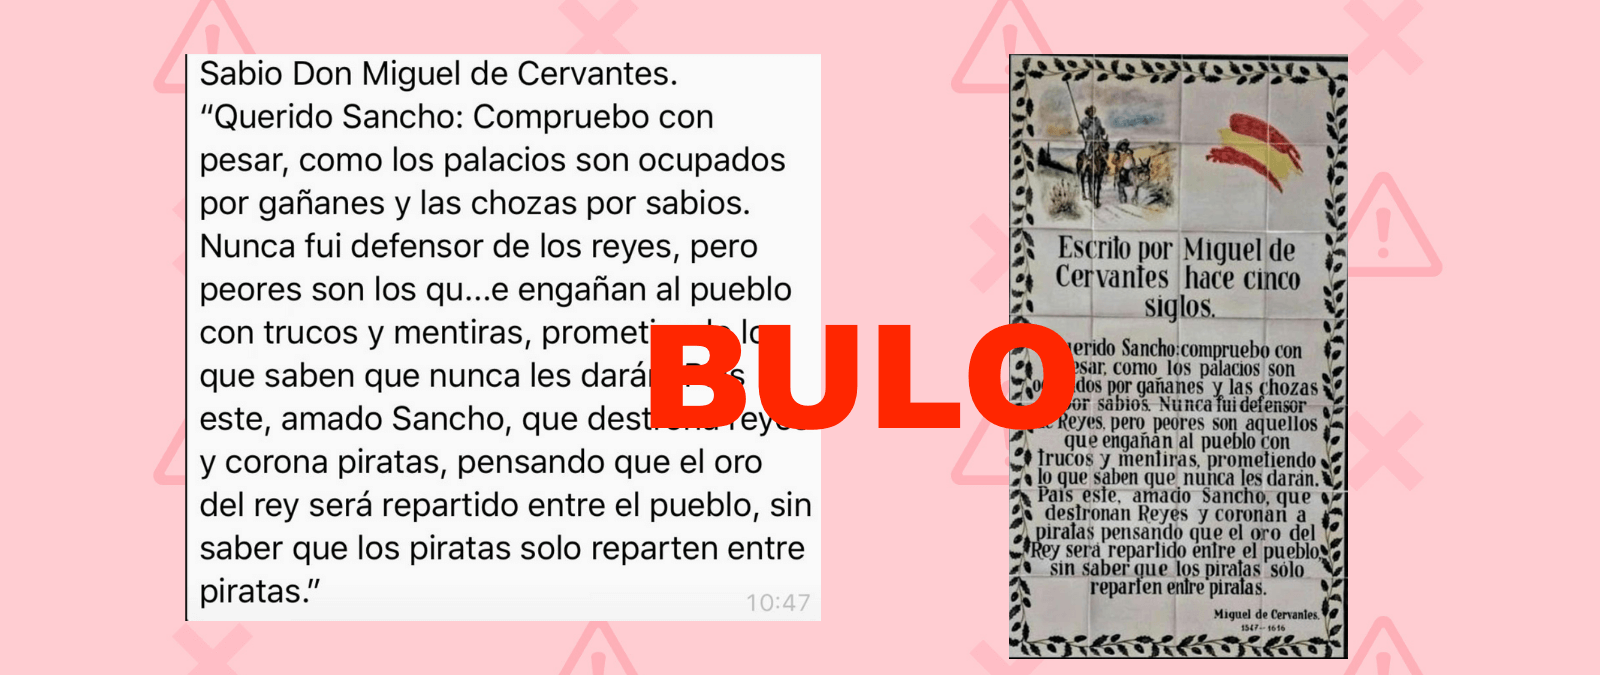 Querido Sancho compruebo con pesar...: la cita falsa sobre reyes y piratas atribuida a Cervantes que no aparece en &#39;El Quijote&#39;